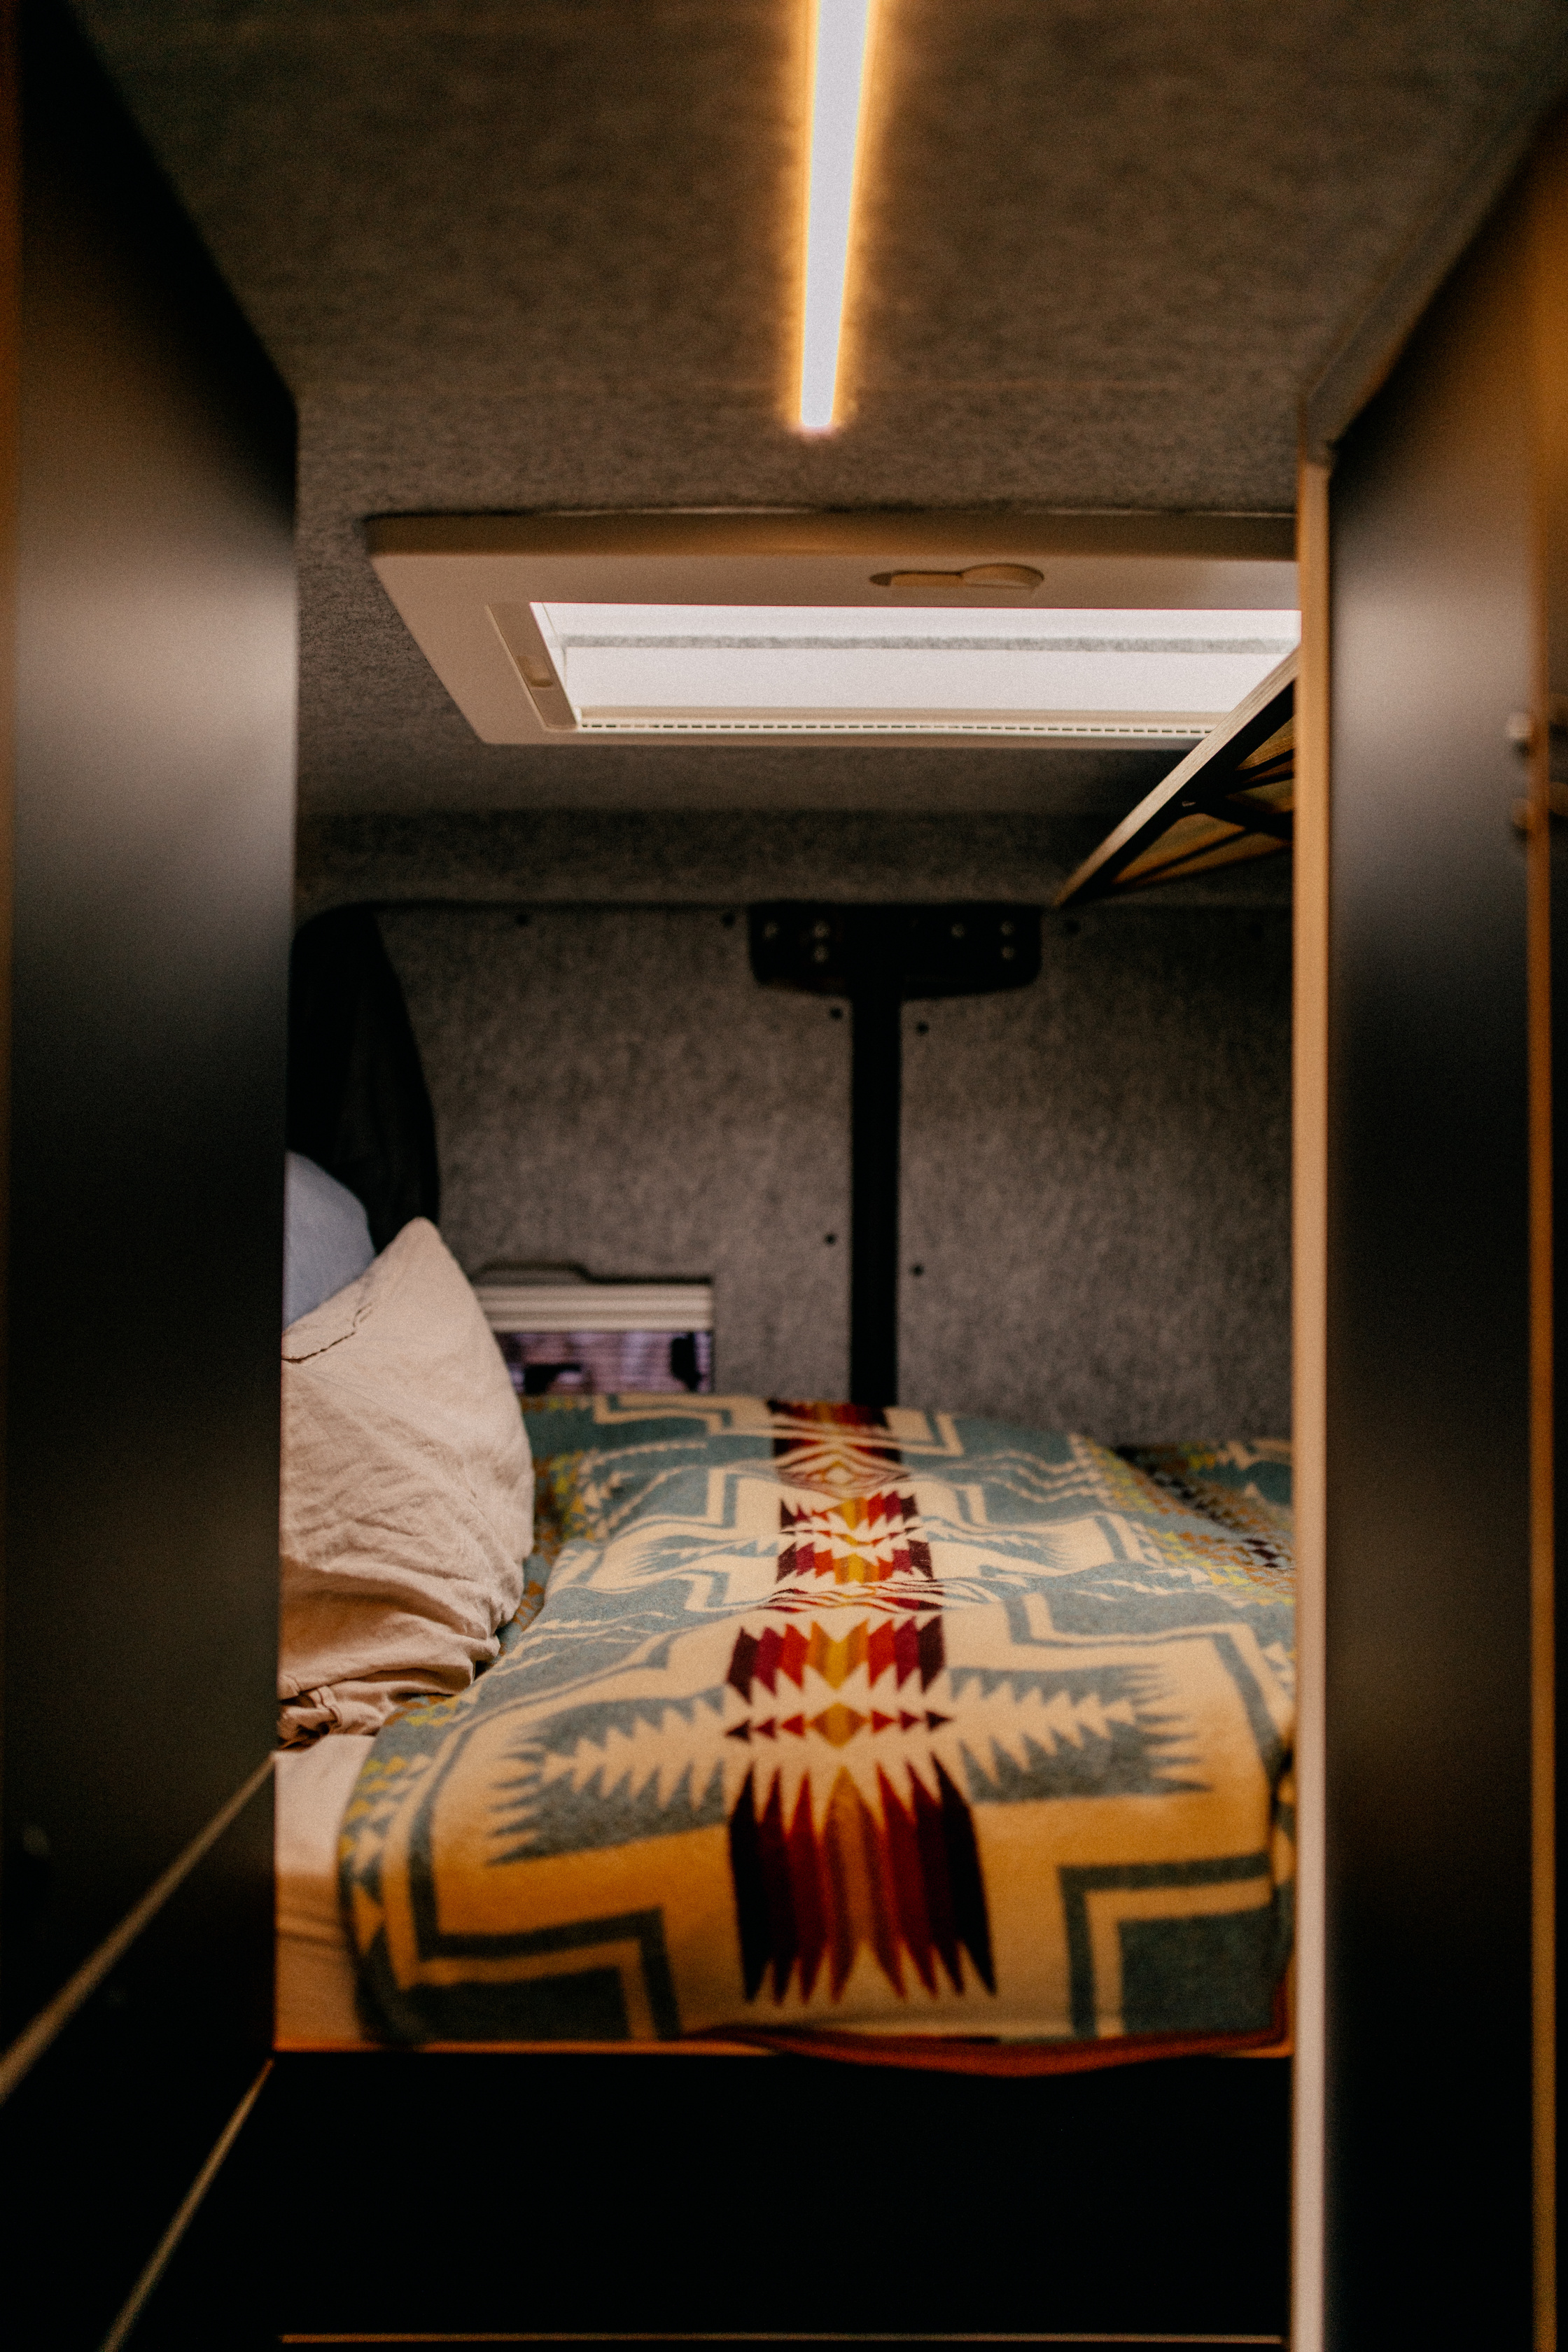 Querschläfer Bett in einem Design Campervan 202x130 cm auch für große Menschen geeignet. Wandverkleidung aus Schafwolle und Leinenbettwäsche. Aussicht auf die Sterne durch Dachluke. 